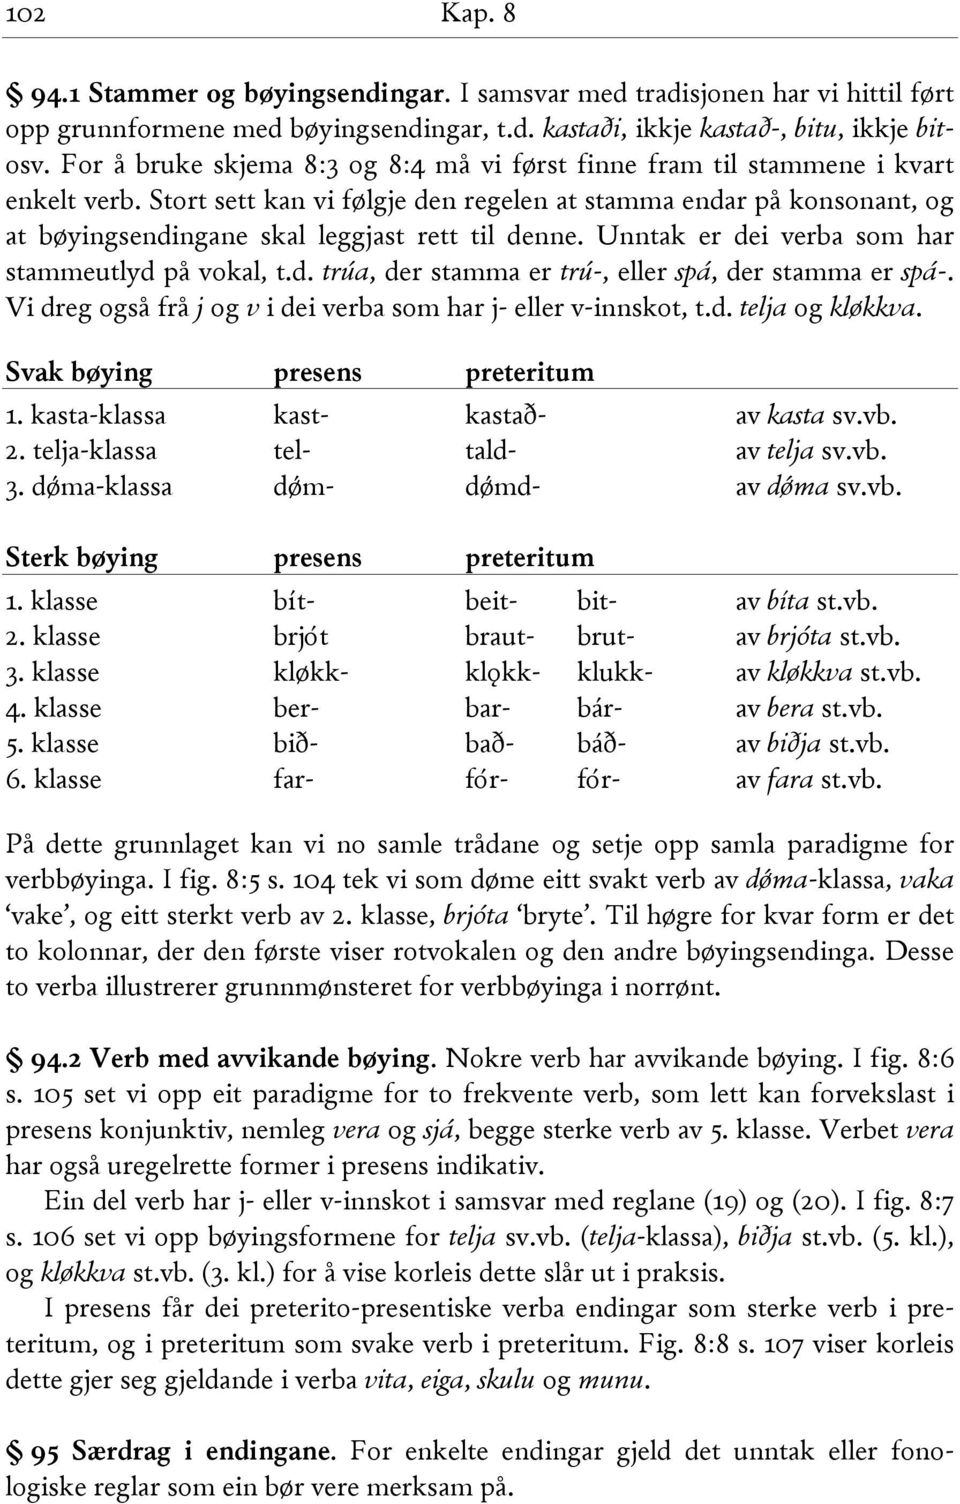 Stort sett kan vi følgje den regelen at stamma endar på konsonant, og at bøyingsendingane skal leggjast rett til denne. Unntak er dei verba som har stammeutlyd på vokal, t.d. trúa, der stamma er trú-, eller spá, der stamma er spá-.